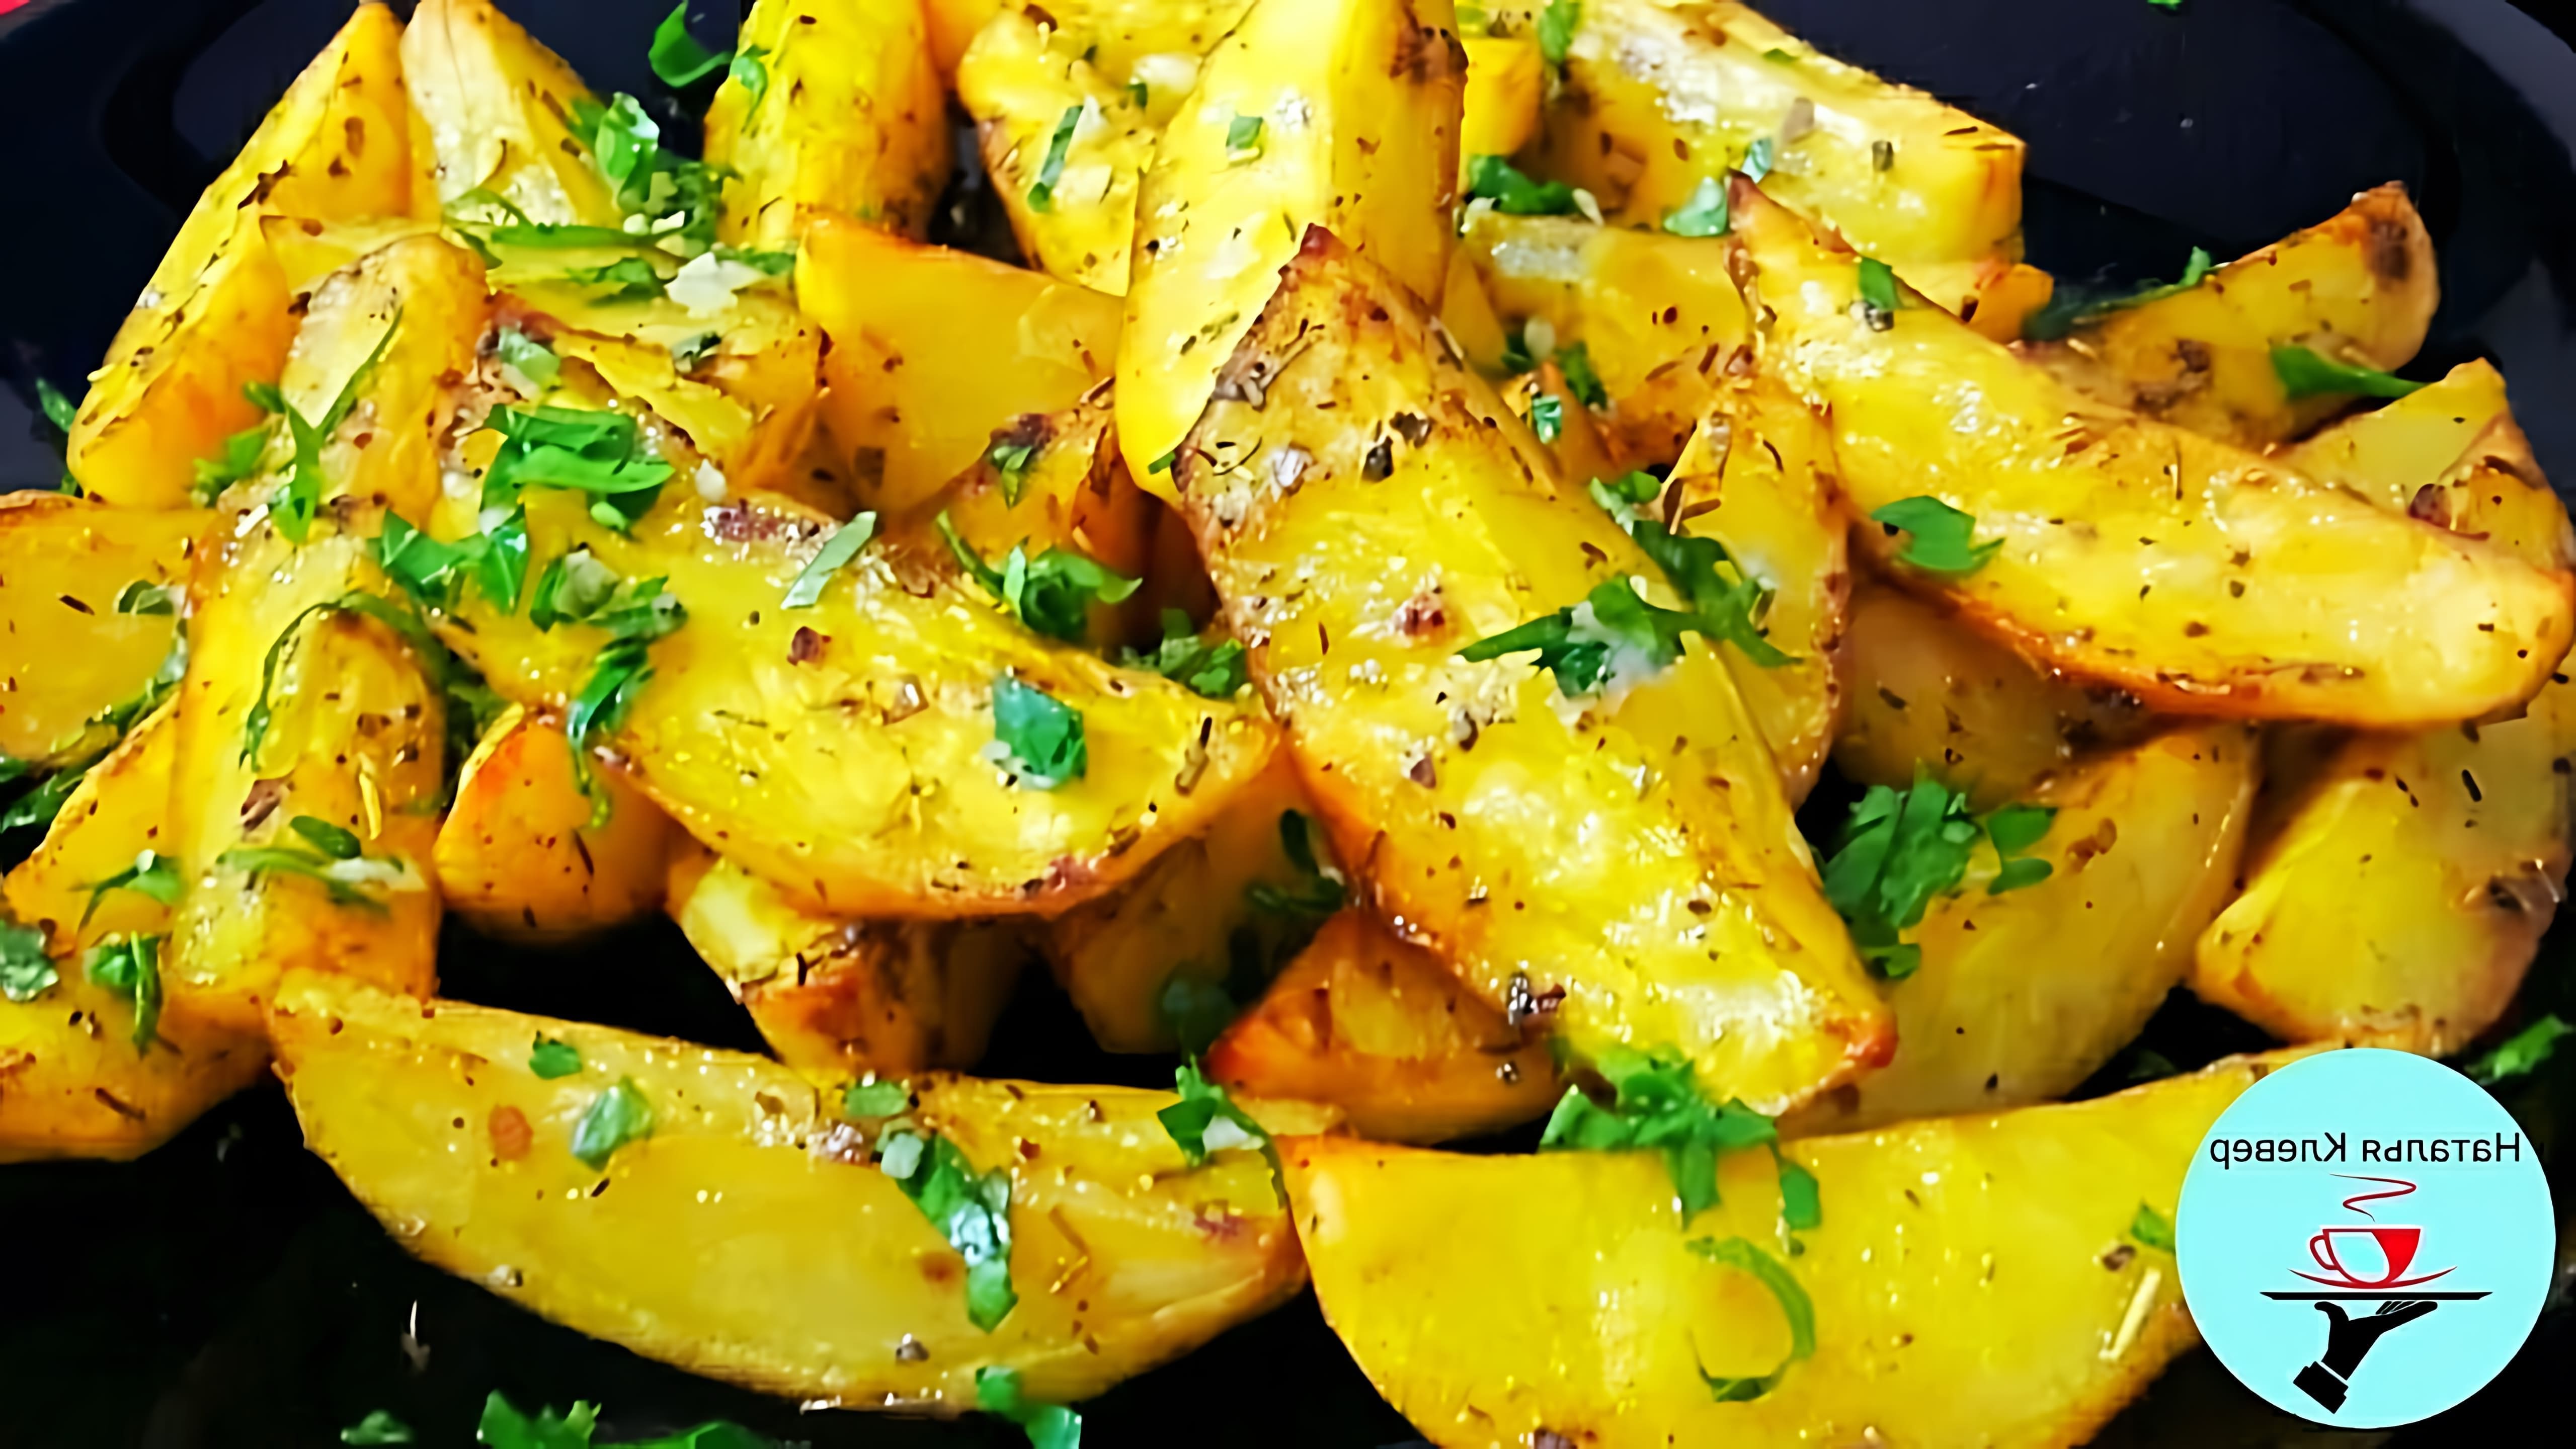 В этом видео демонстрируется рецепт приготовления картофеля по-деревенски в духовке